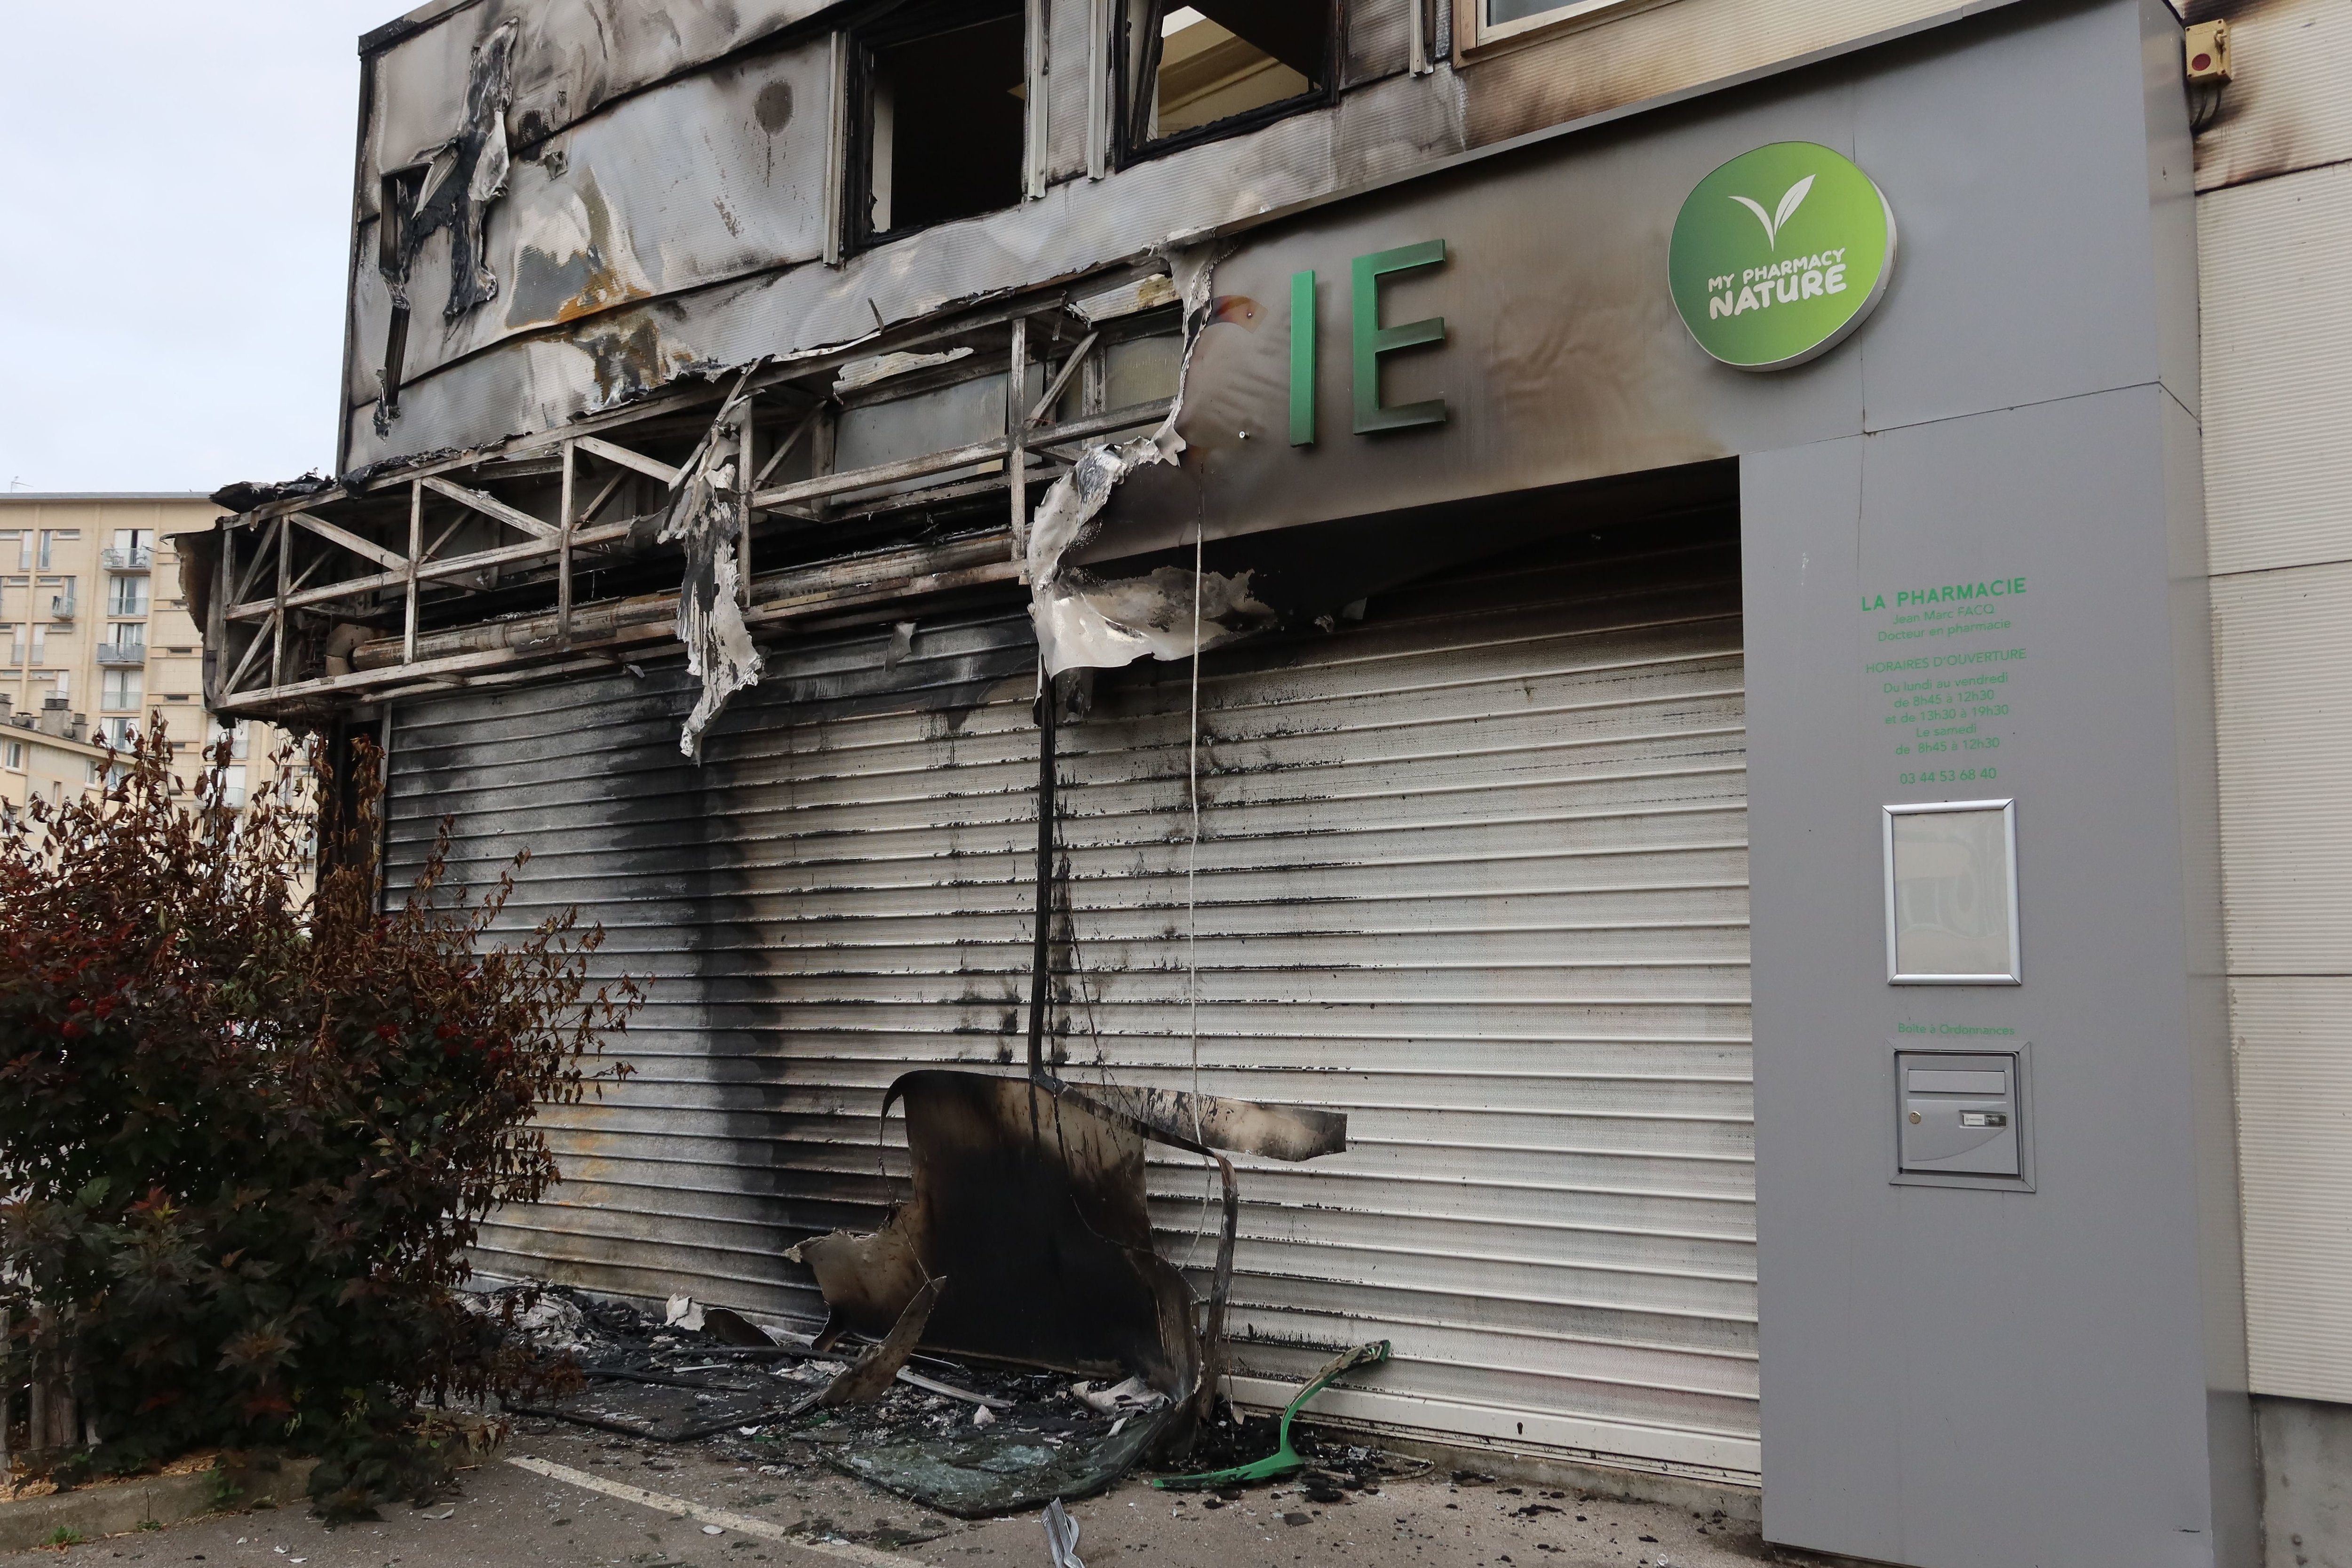 Montataire, ce jeudi. La pharmacie Facq au lendemain de l'incendie qui a ravagé la façade du bâtiment. LP/Clément Poulet